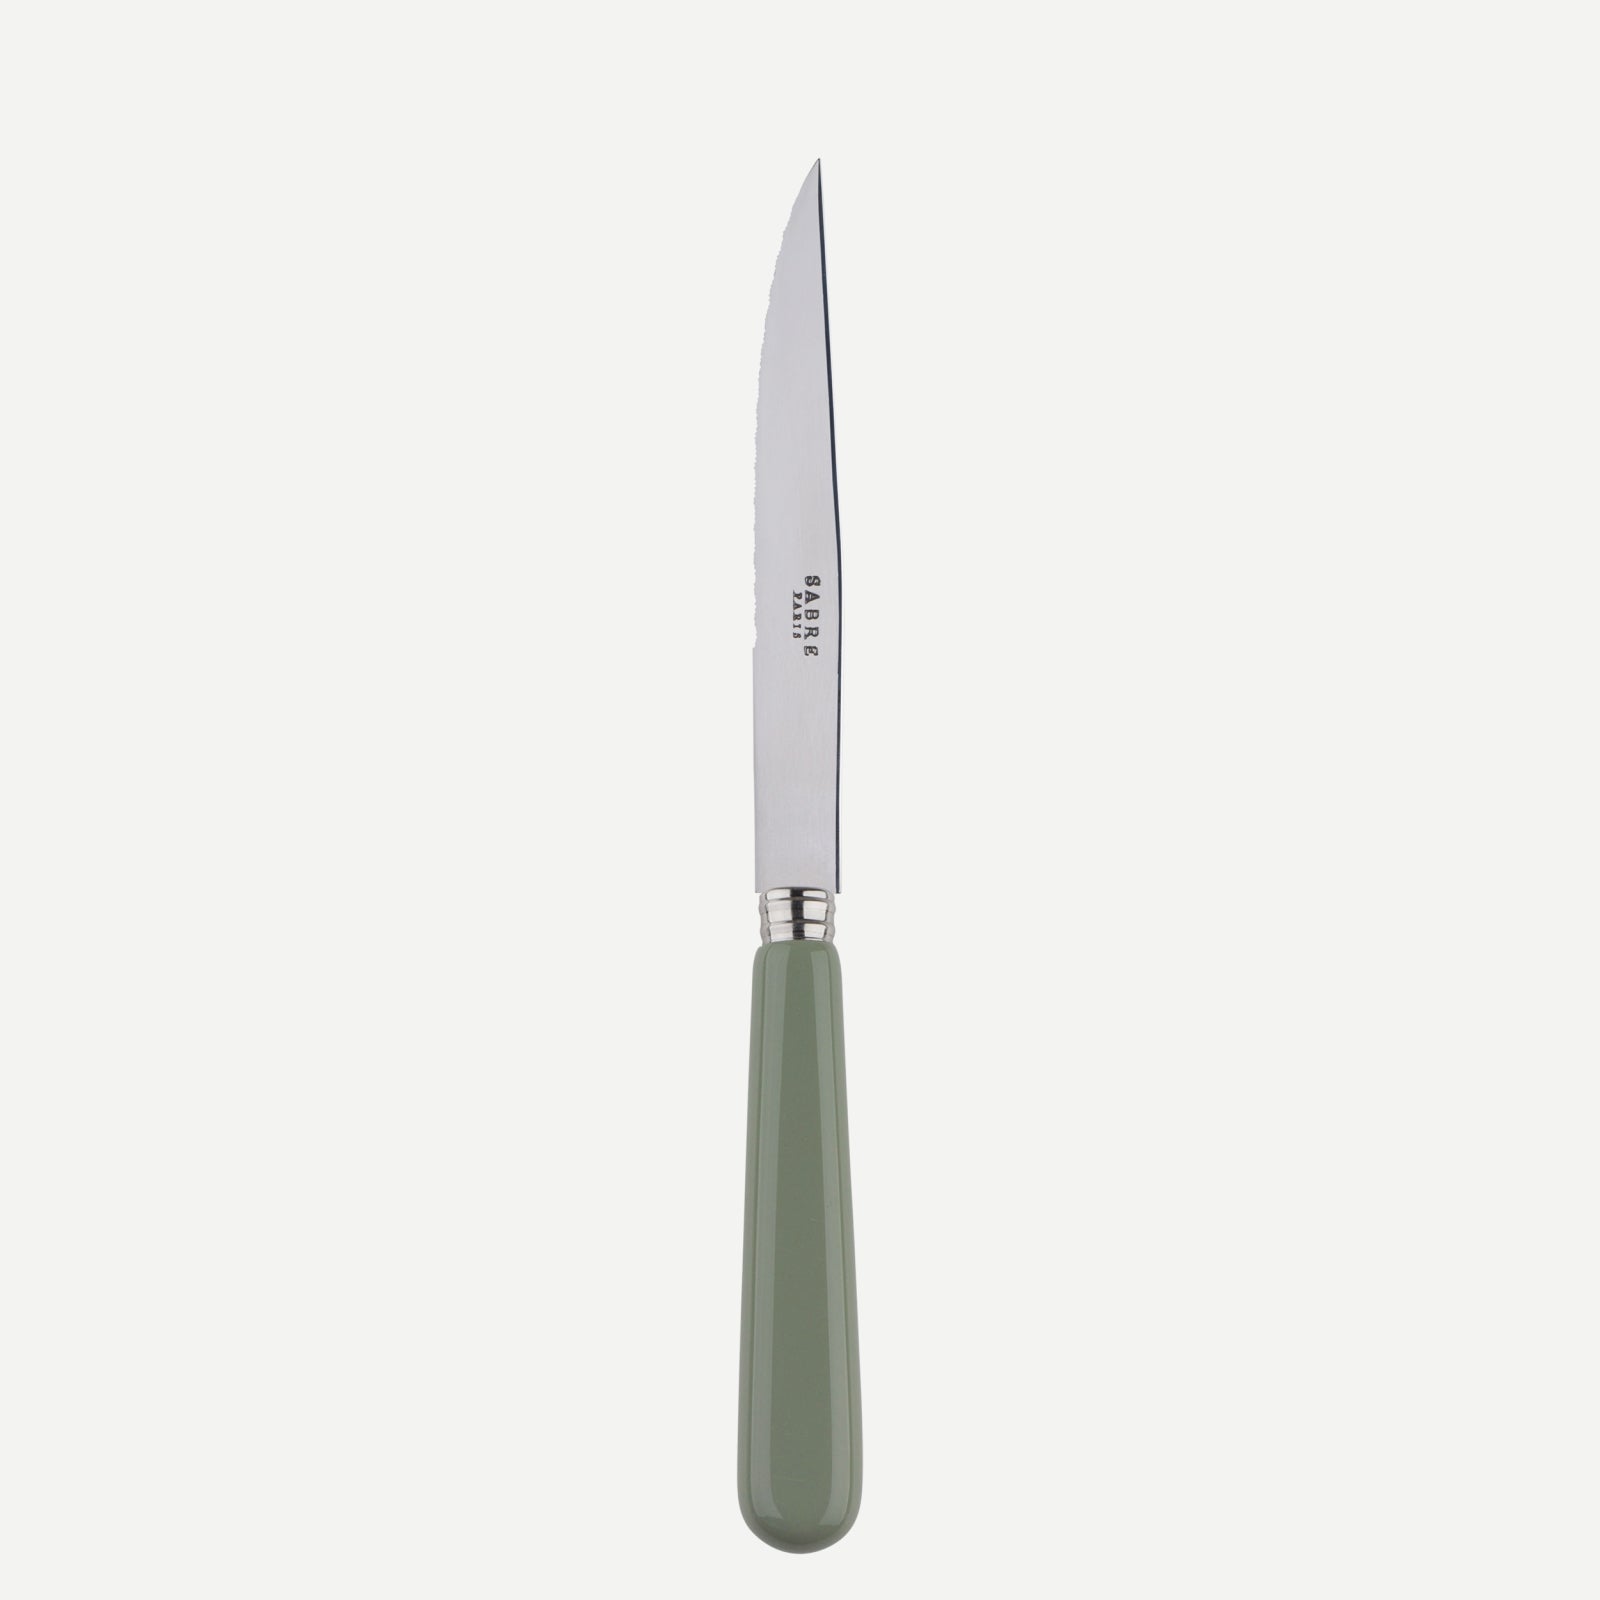 Steack knife - Pop unis - Asparagus